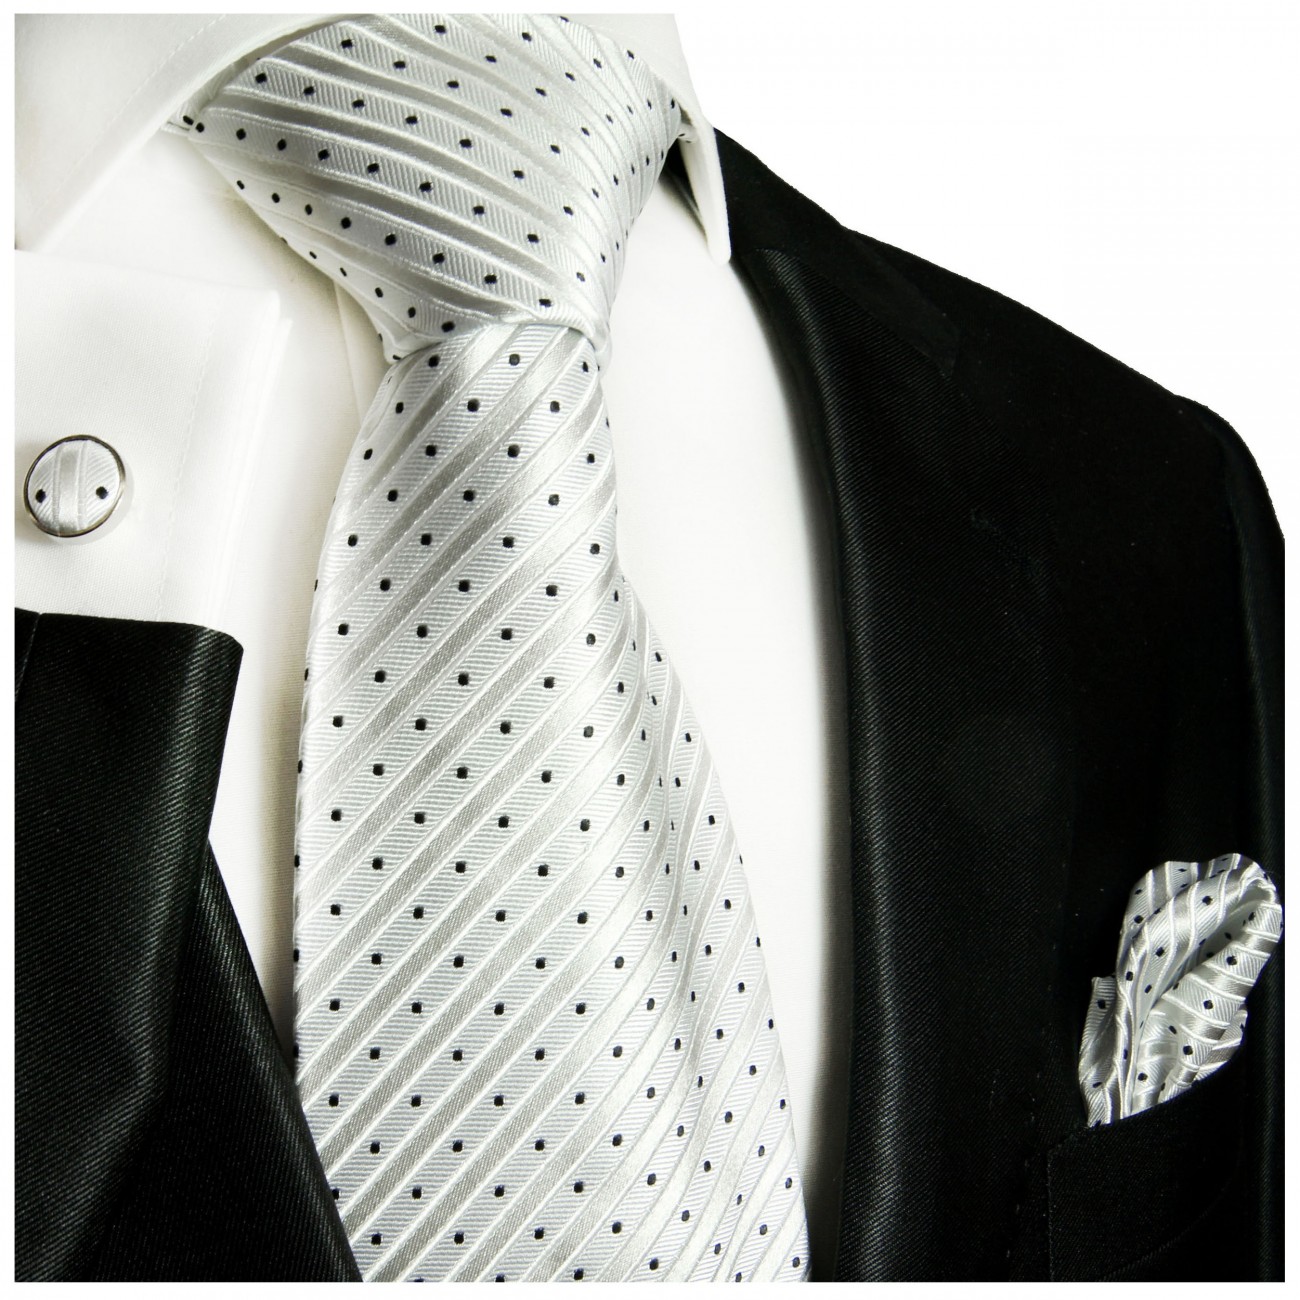 Krawatte silber weiß Seide gestreift mit Einstecktuch und Manschettenknöpfen